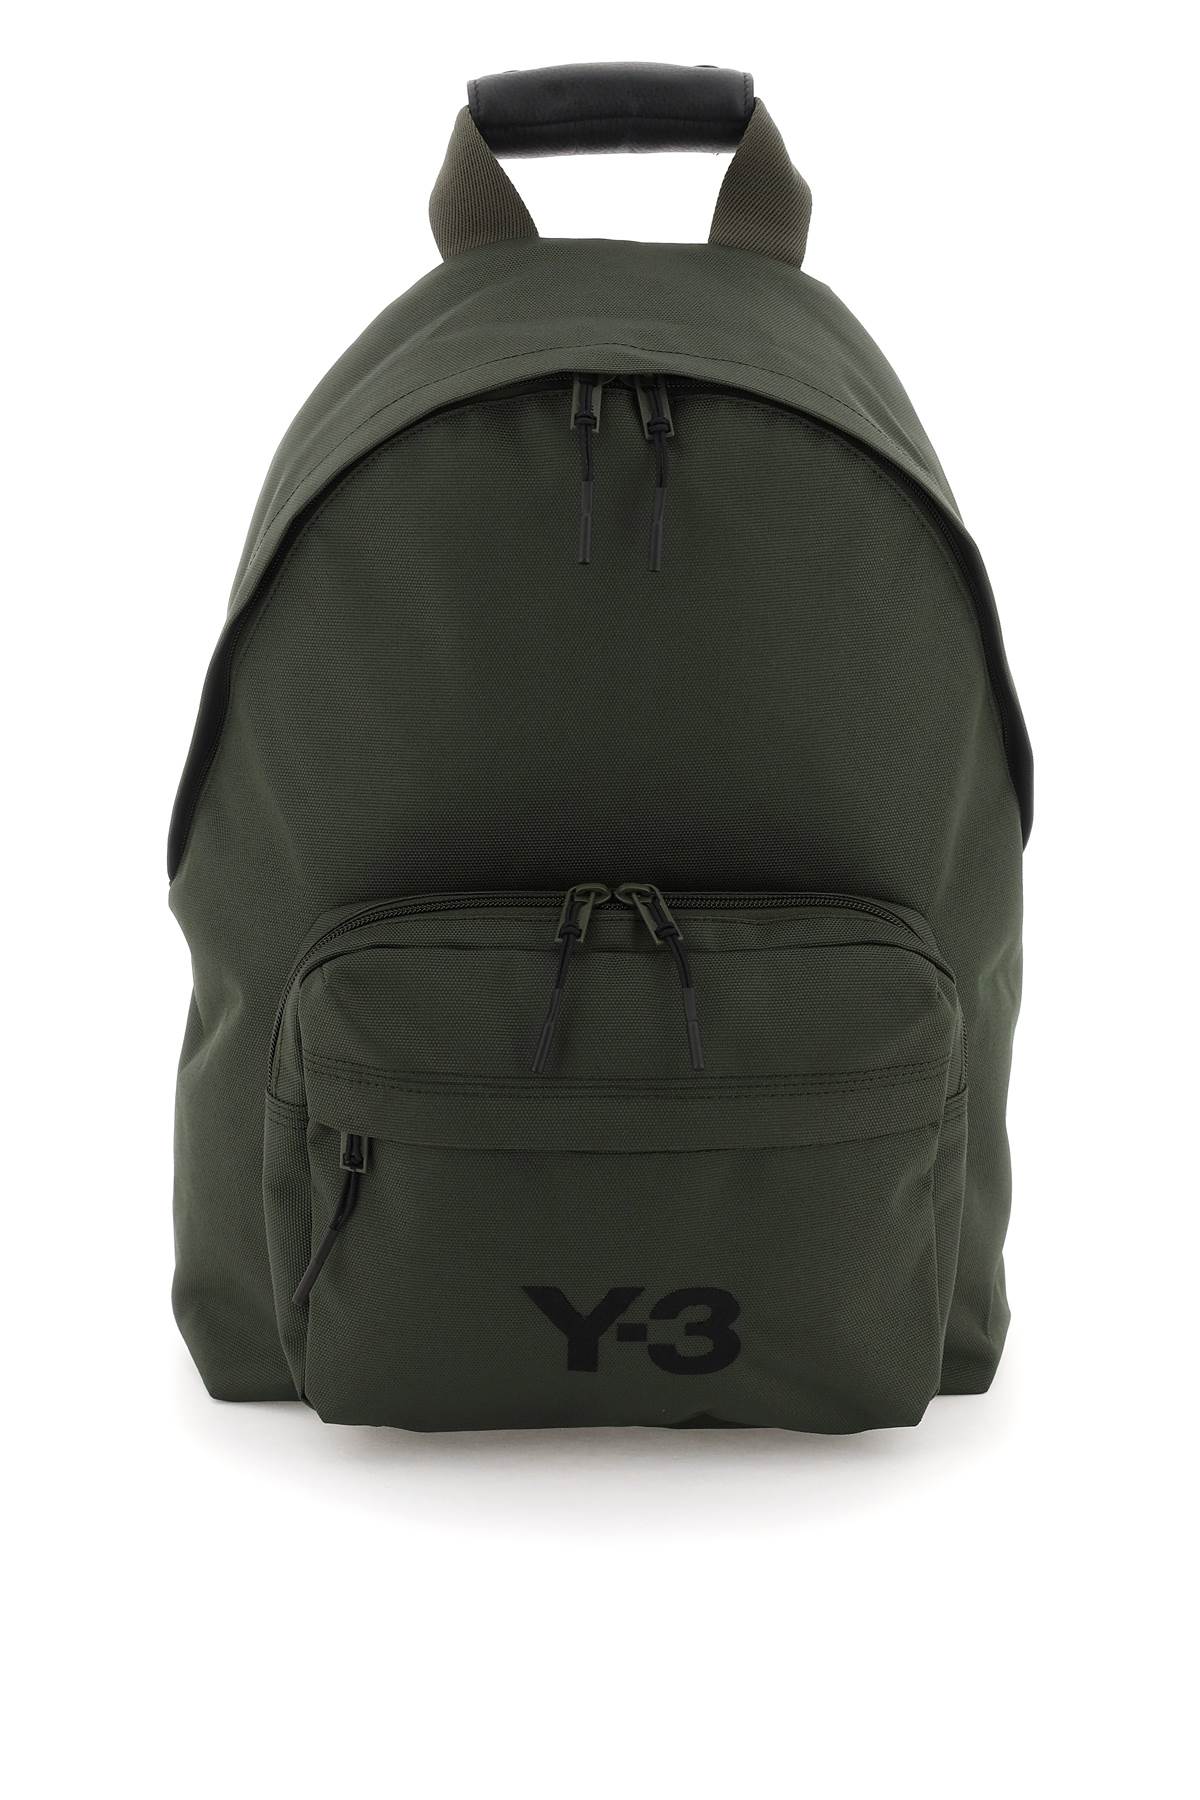 Y-3 Logoed Backpack